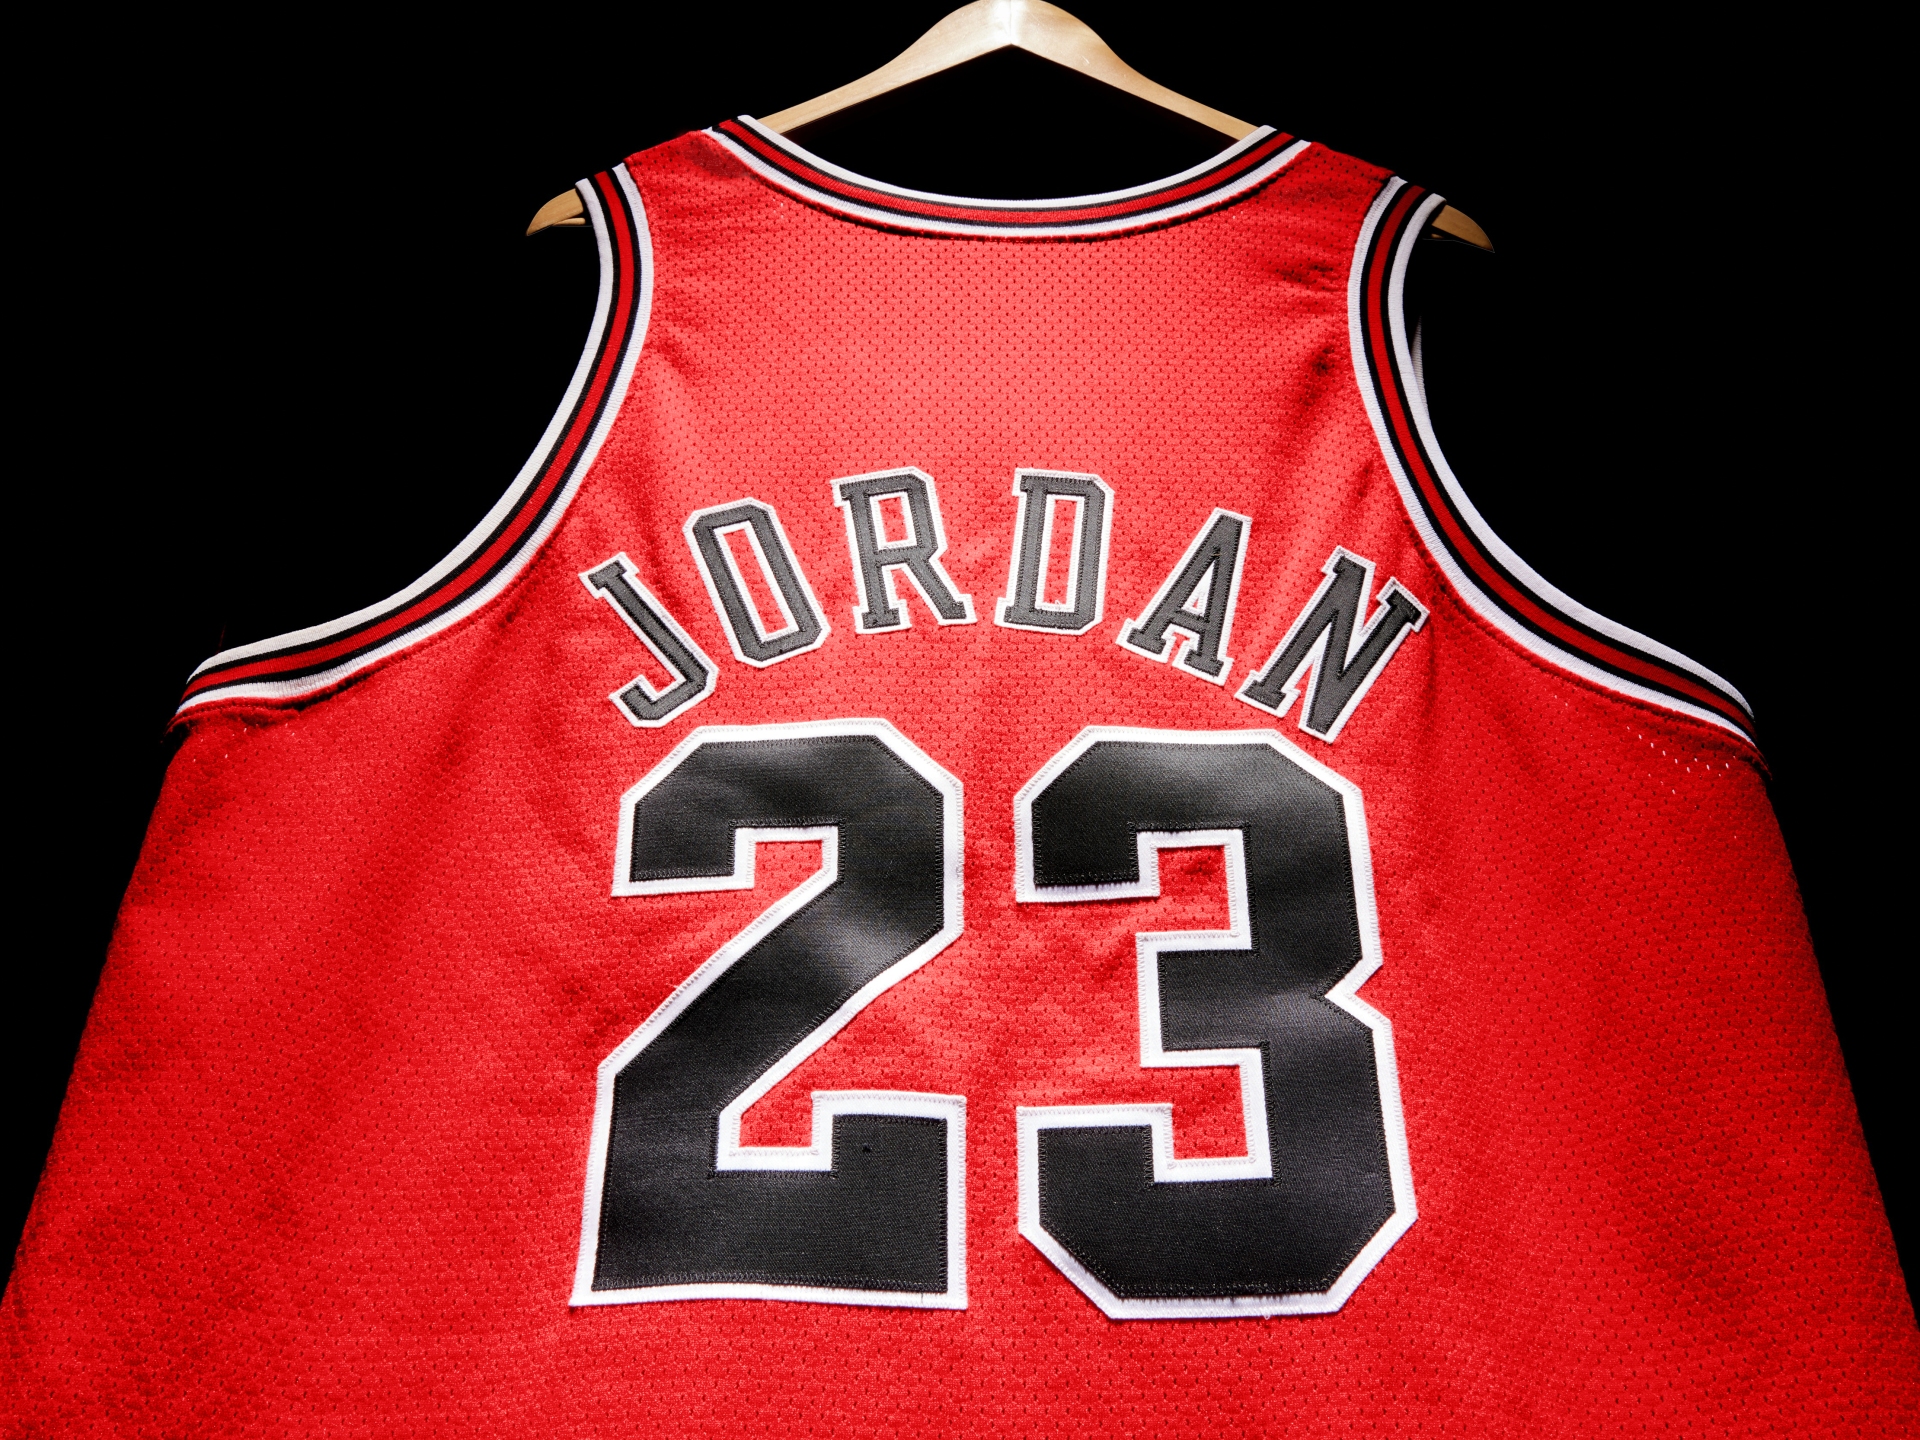 Michael Jordan’s 1998 NBA Finals jersey sells for record $10.1M